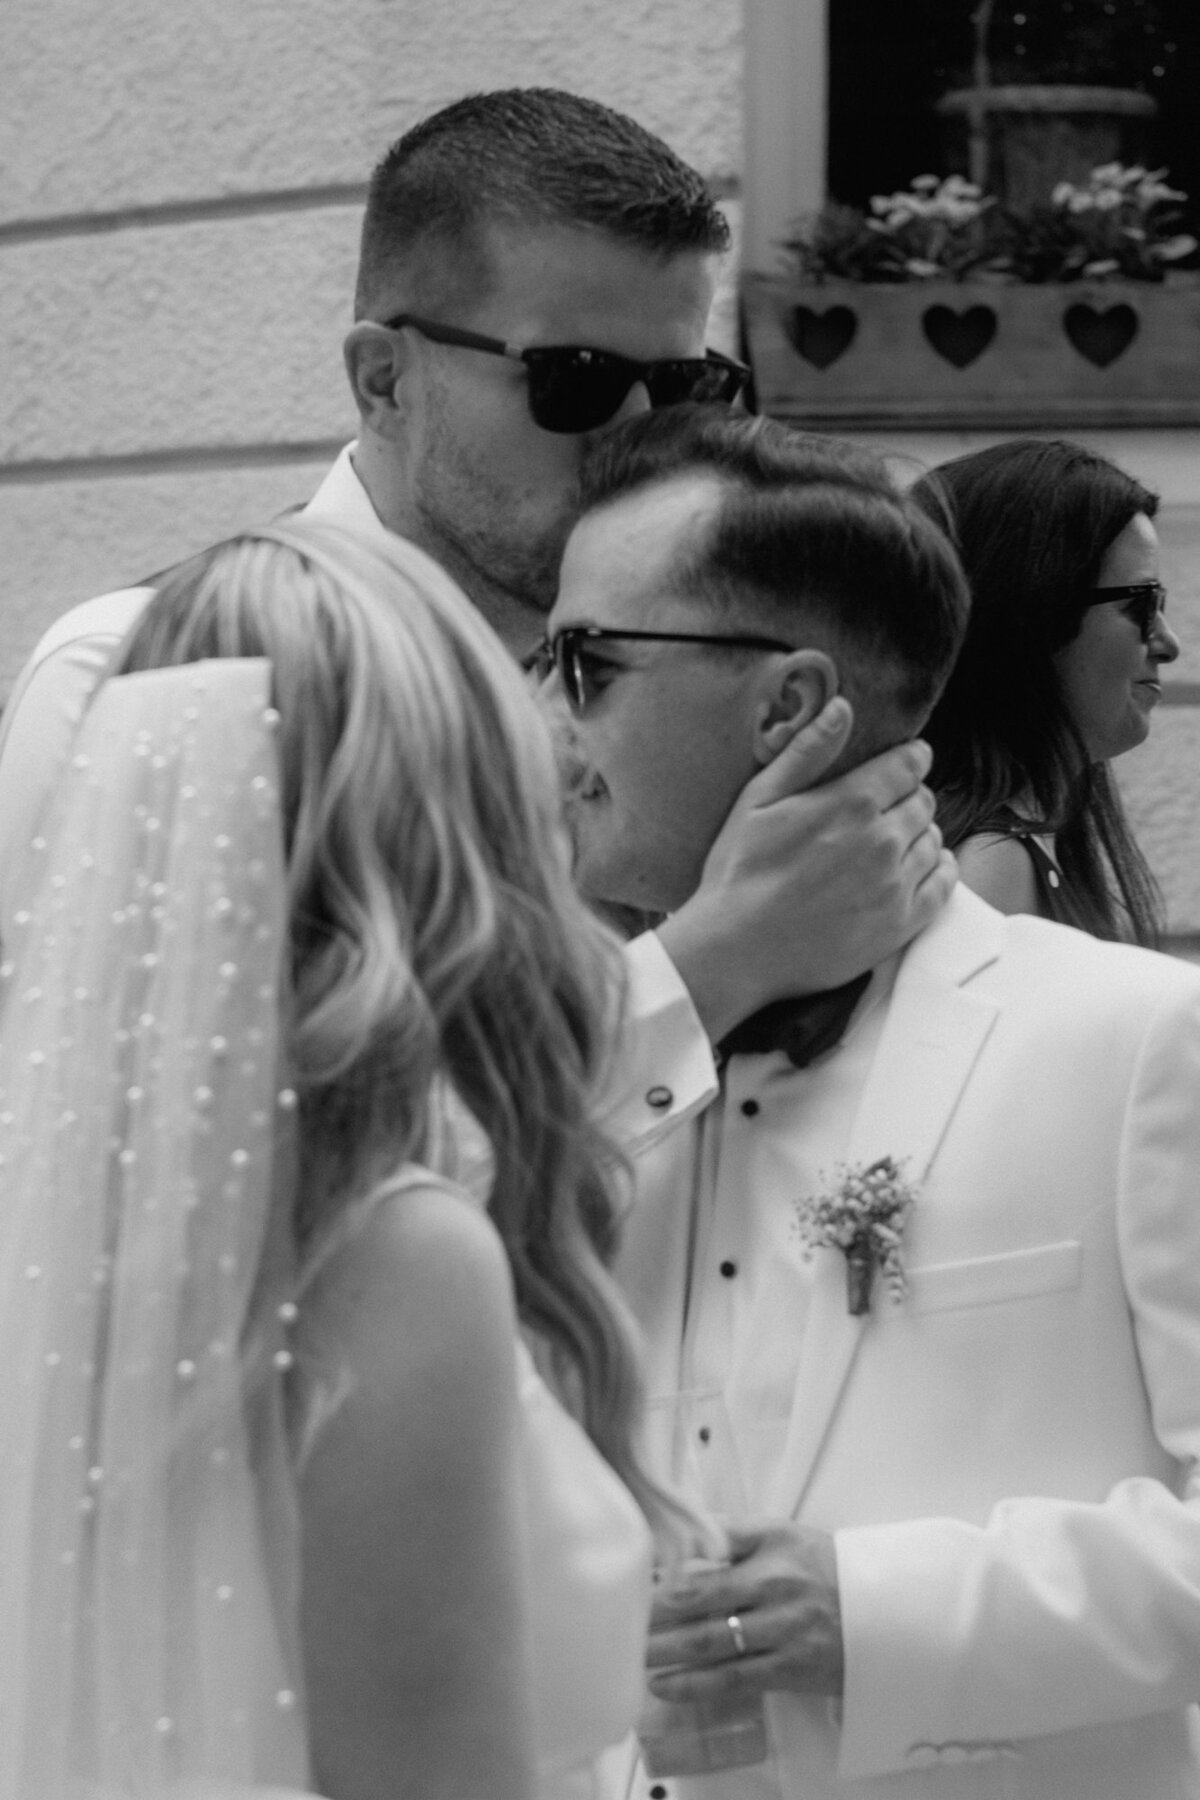 Der Bräutigam wird von einem männlichen Gast mit Sonnenbrille auf den Kopf geküsst.